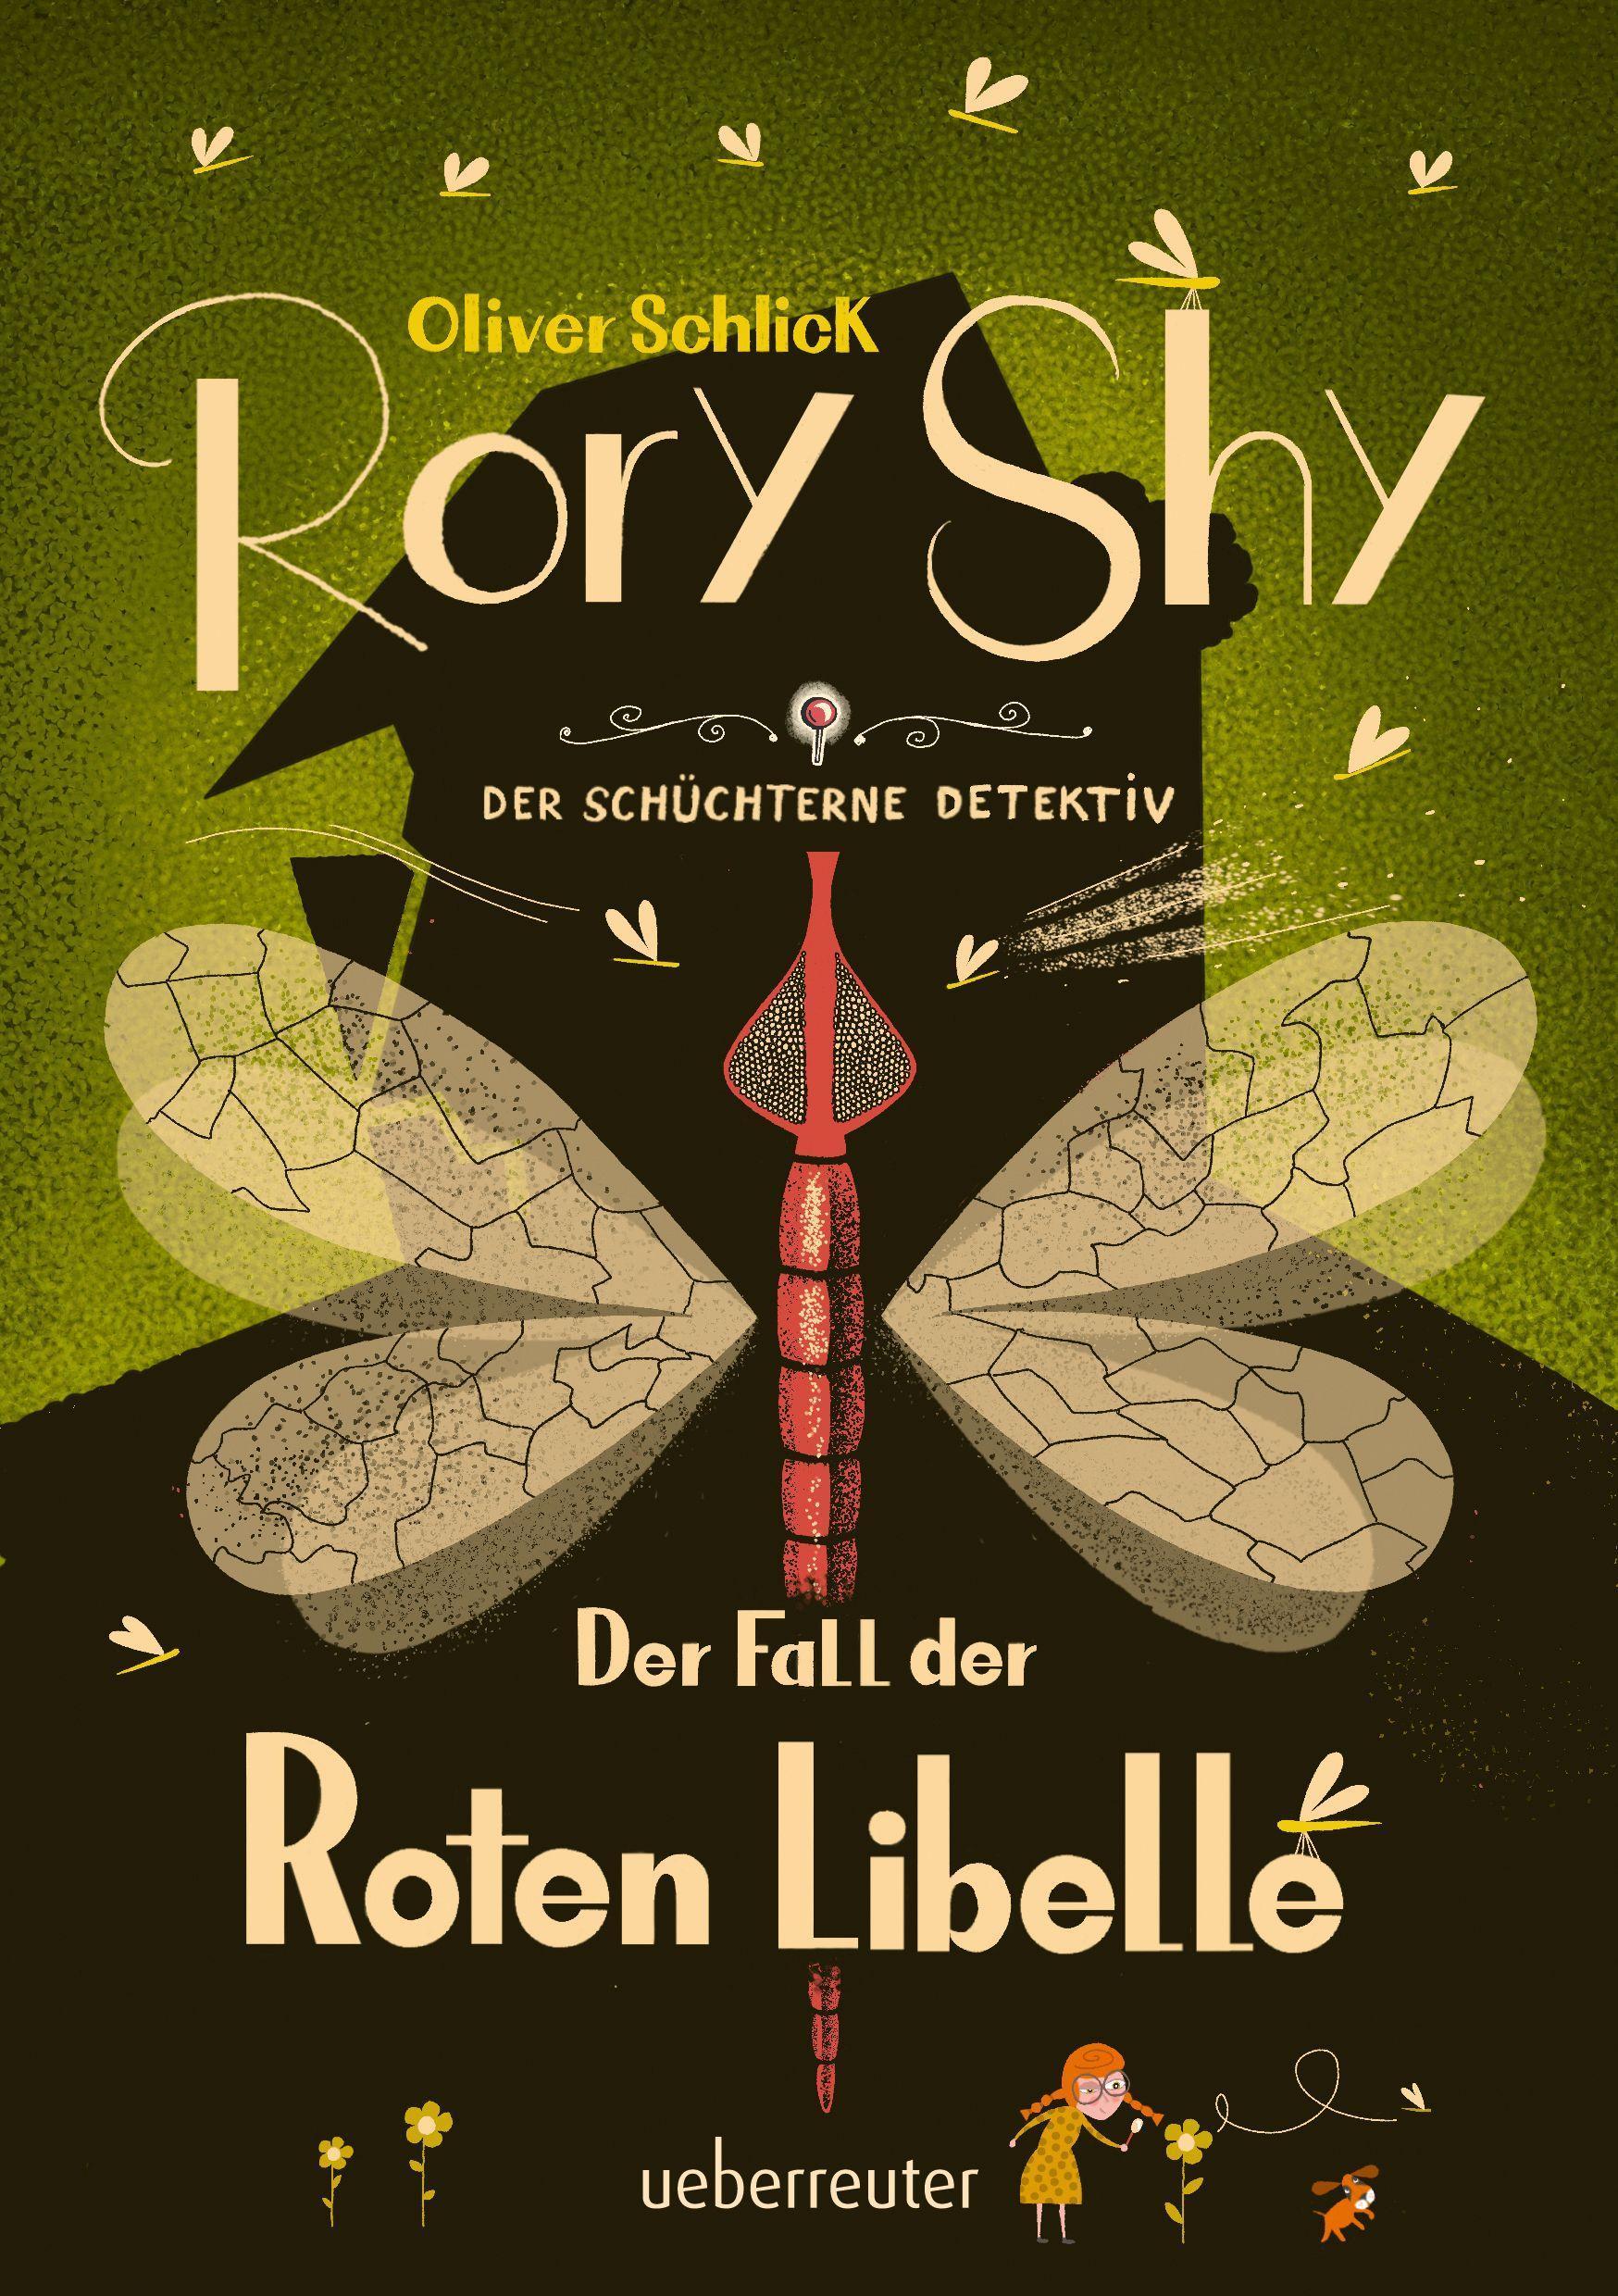 Rory Shy, der schüchterne Detektiv - Der Fall der Roten Libelle (Rory Shy, der schüchterne Detektiv, (Mängelexemplar)